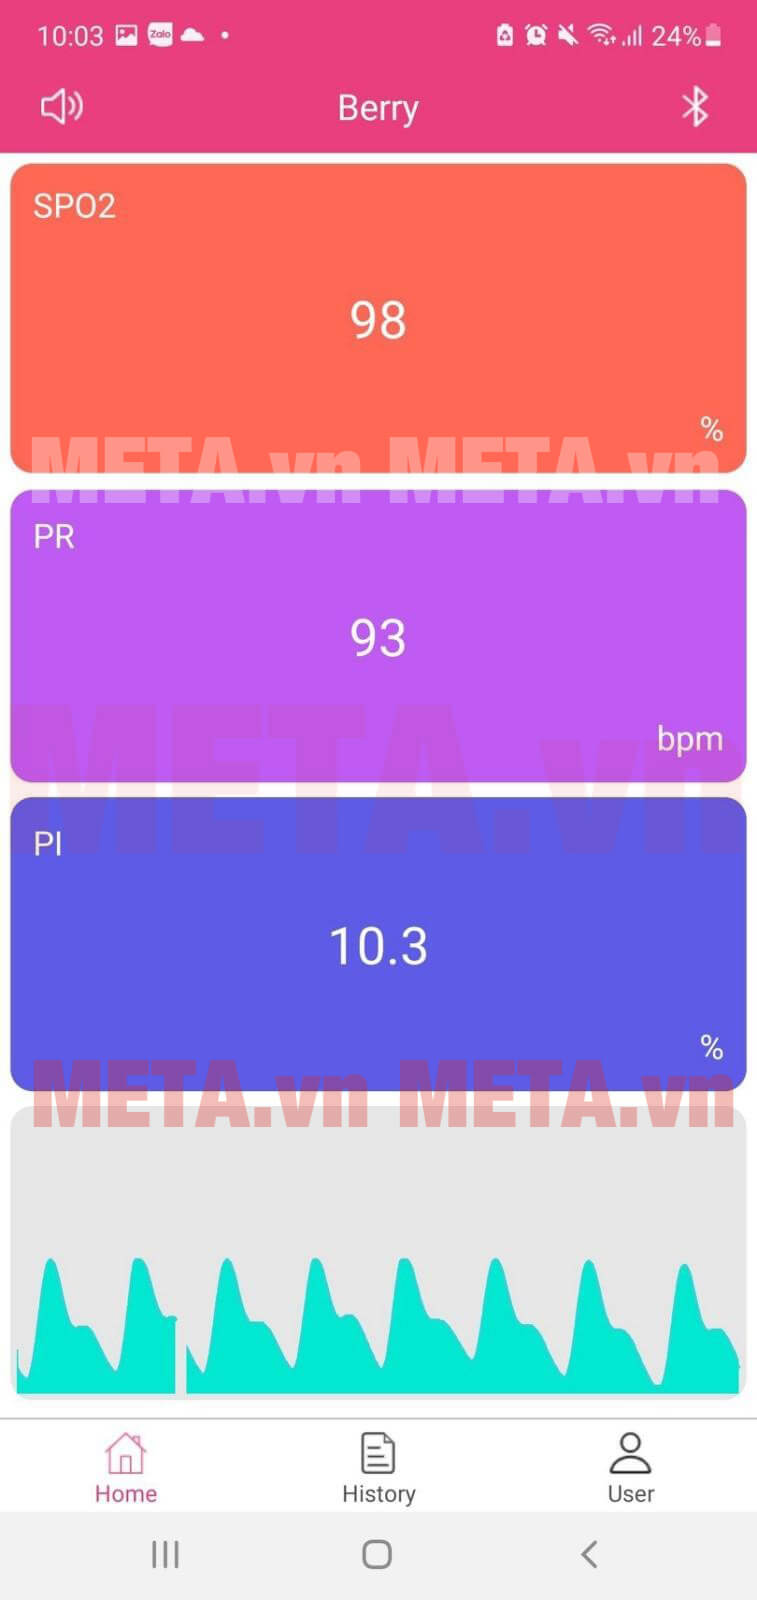 Chỉ số SpO2, nhịp tim và chỉ số tưới máu Pi hiển thị trên ứng dụng liên kết với Berry BM1000C